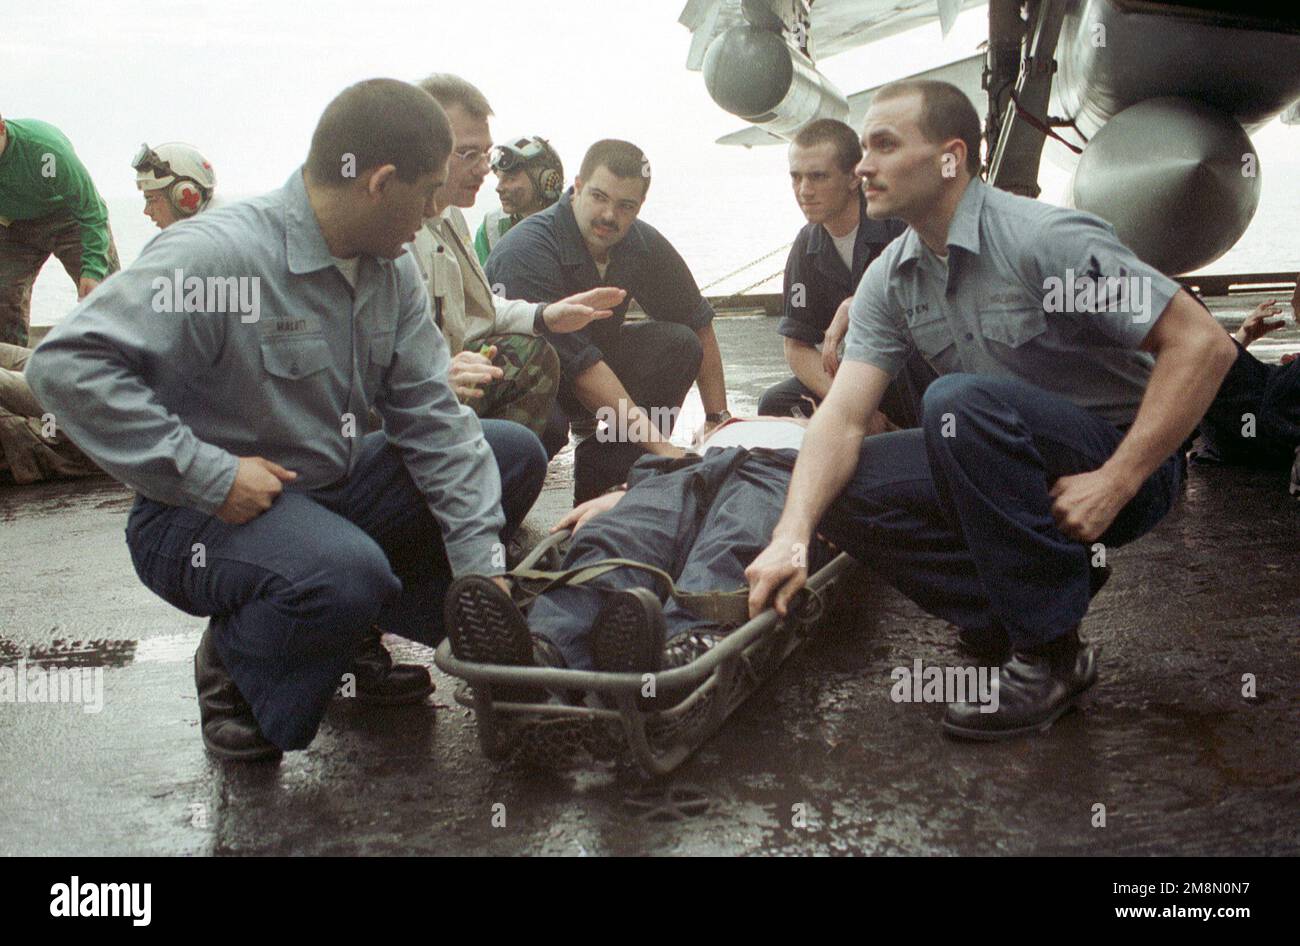 Gli equipaggi della Marina STATUNITENSE aiutano a trasportare un compagno di nave ferito durante un'esercitazione di addestramento di massa sul ponte di volo della portaerei convenzionale USS INDEPENDENCE (CV 62). L’INDIPENDENZA viene distribuita nel Golfo Persico per imporre le sanzioni delle Nazioni Unite contro l’Iraq. Operazione orologio SOUTHRN, 21 febbraio 1998. Operazione/Serie oggetto: SOUTHERN WATCH base: USS Independence (CV 62) Foto Stock